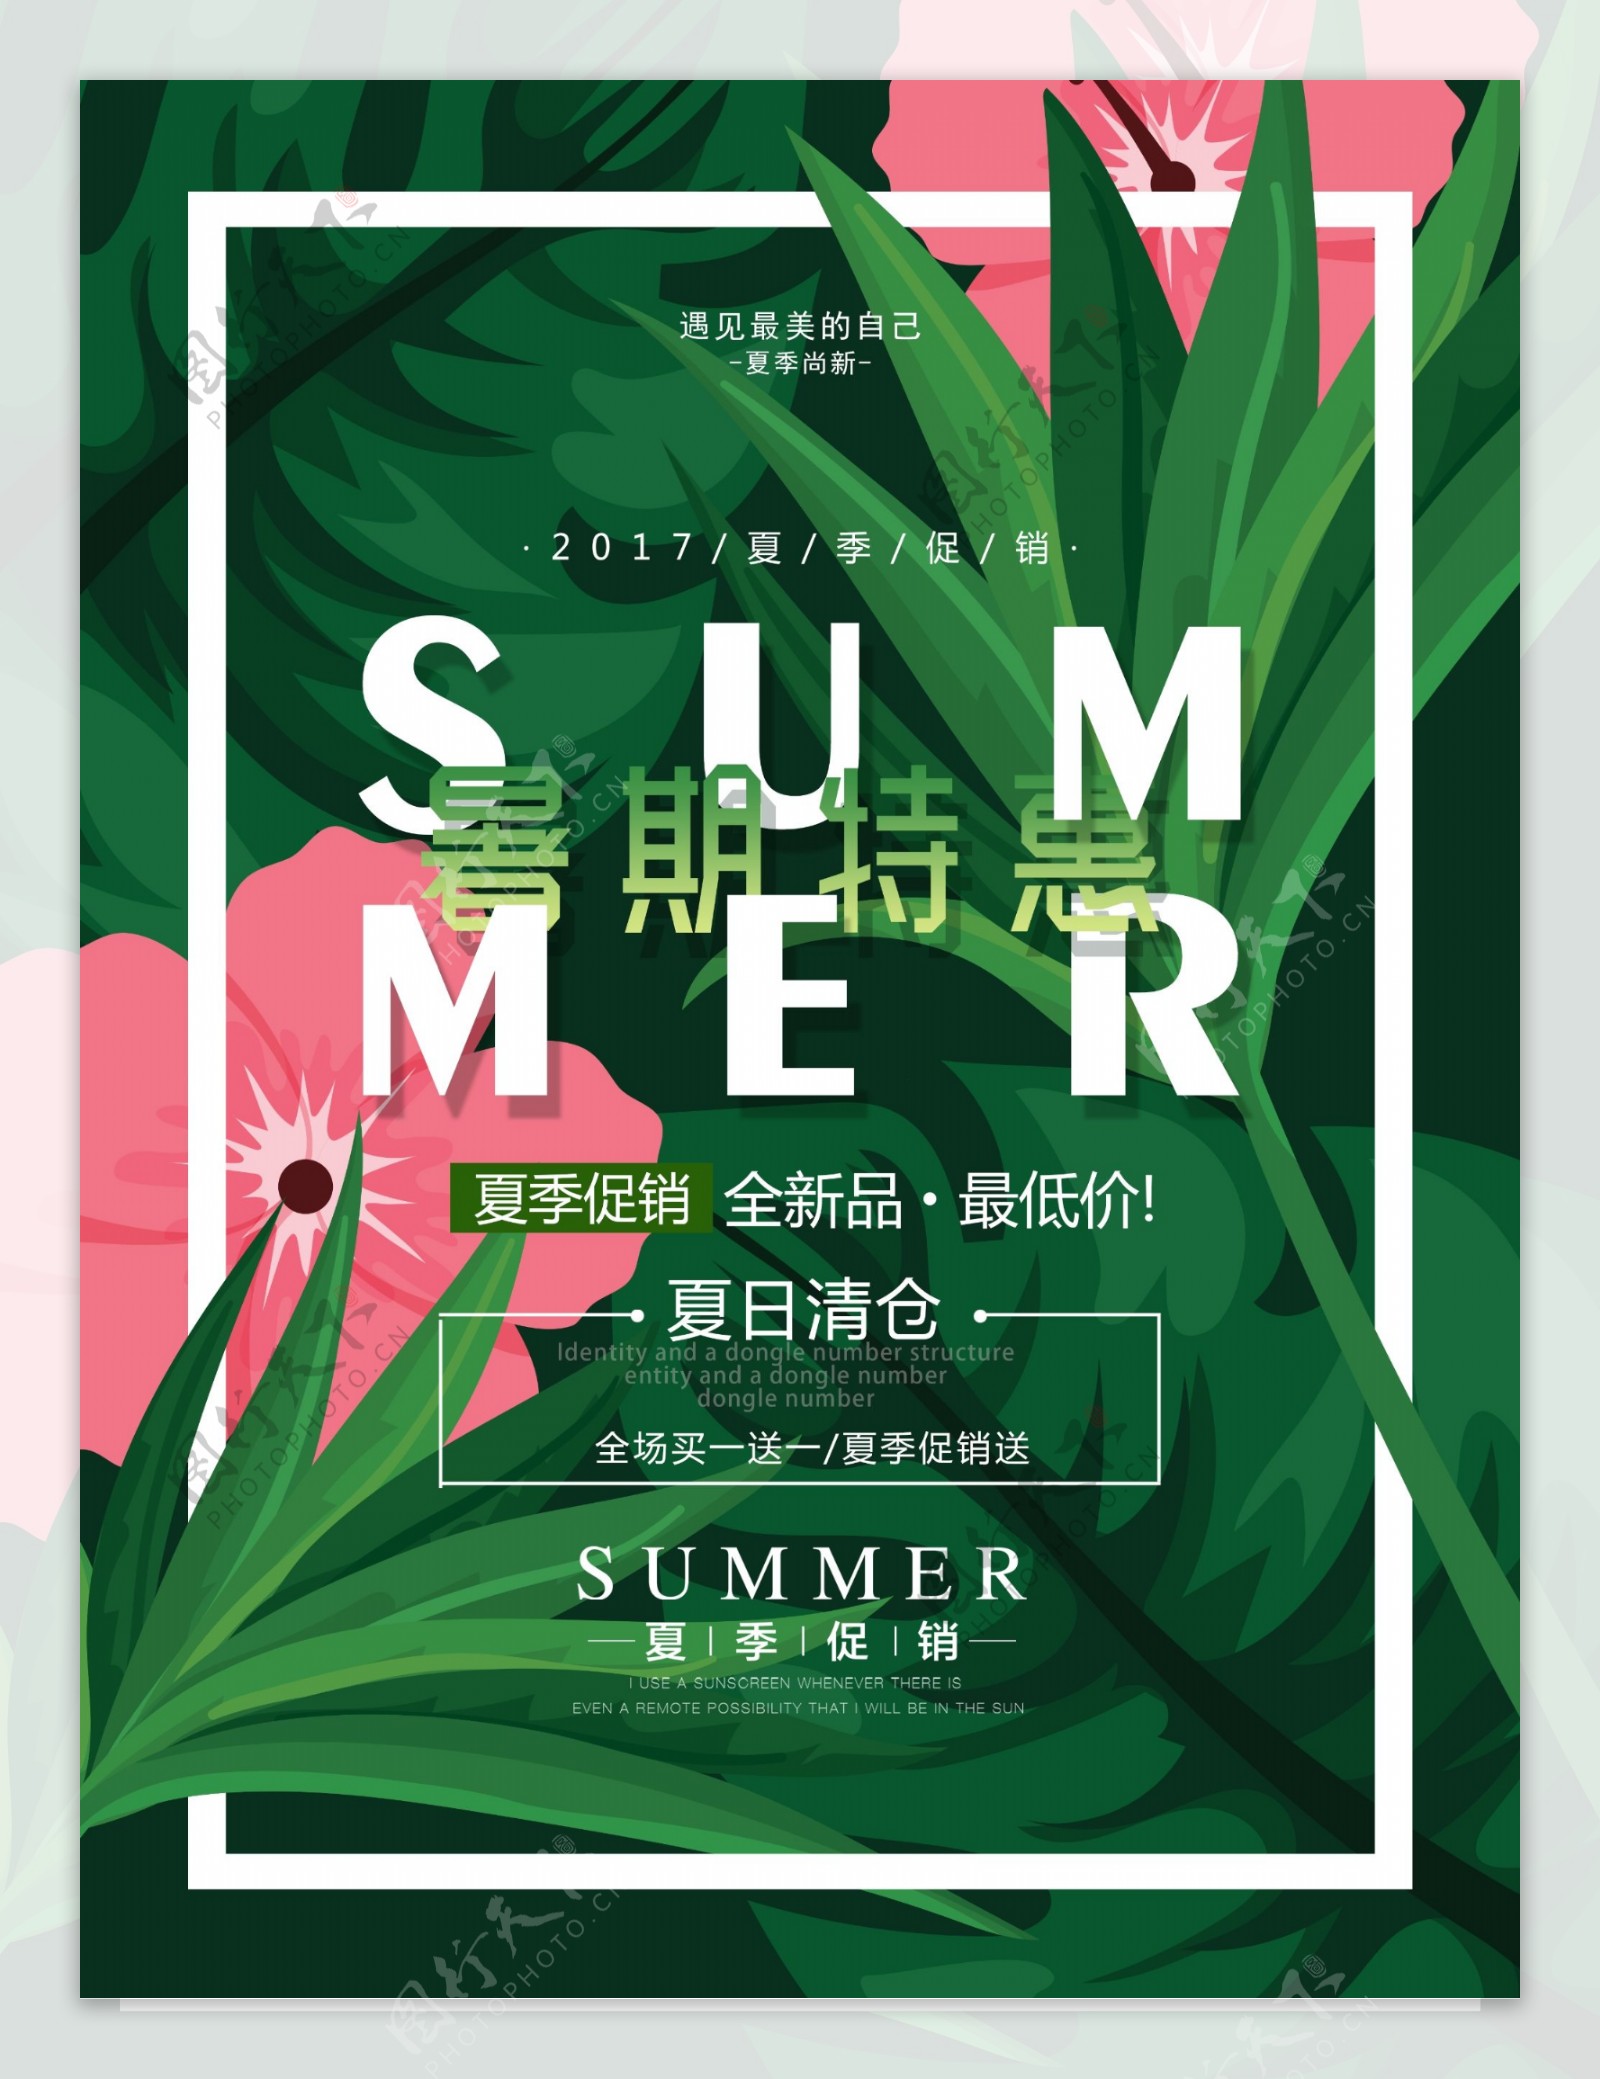 夏季热带植物暑期特惠夏季促销海报